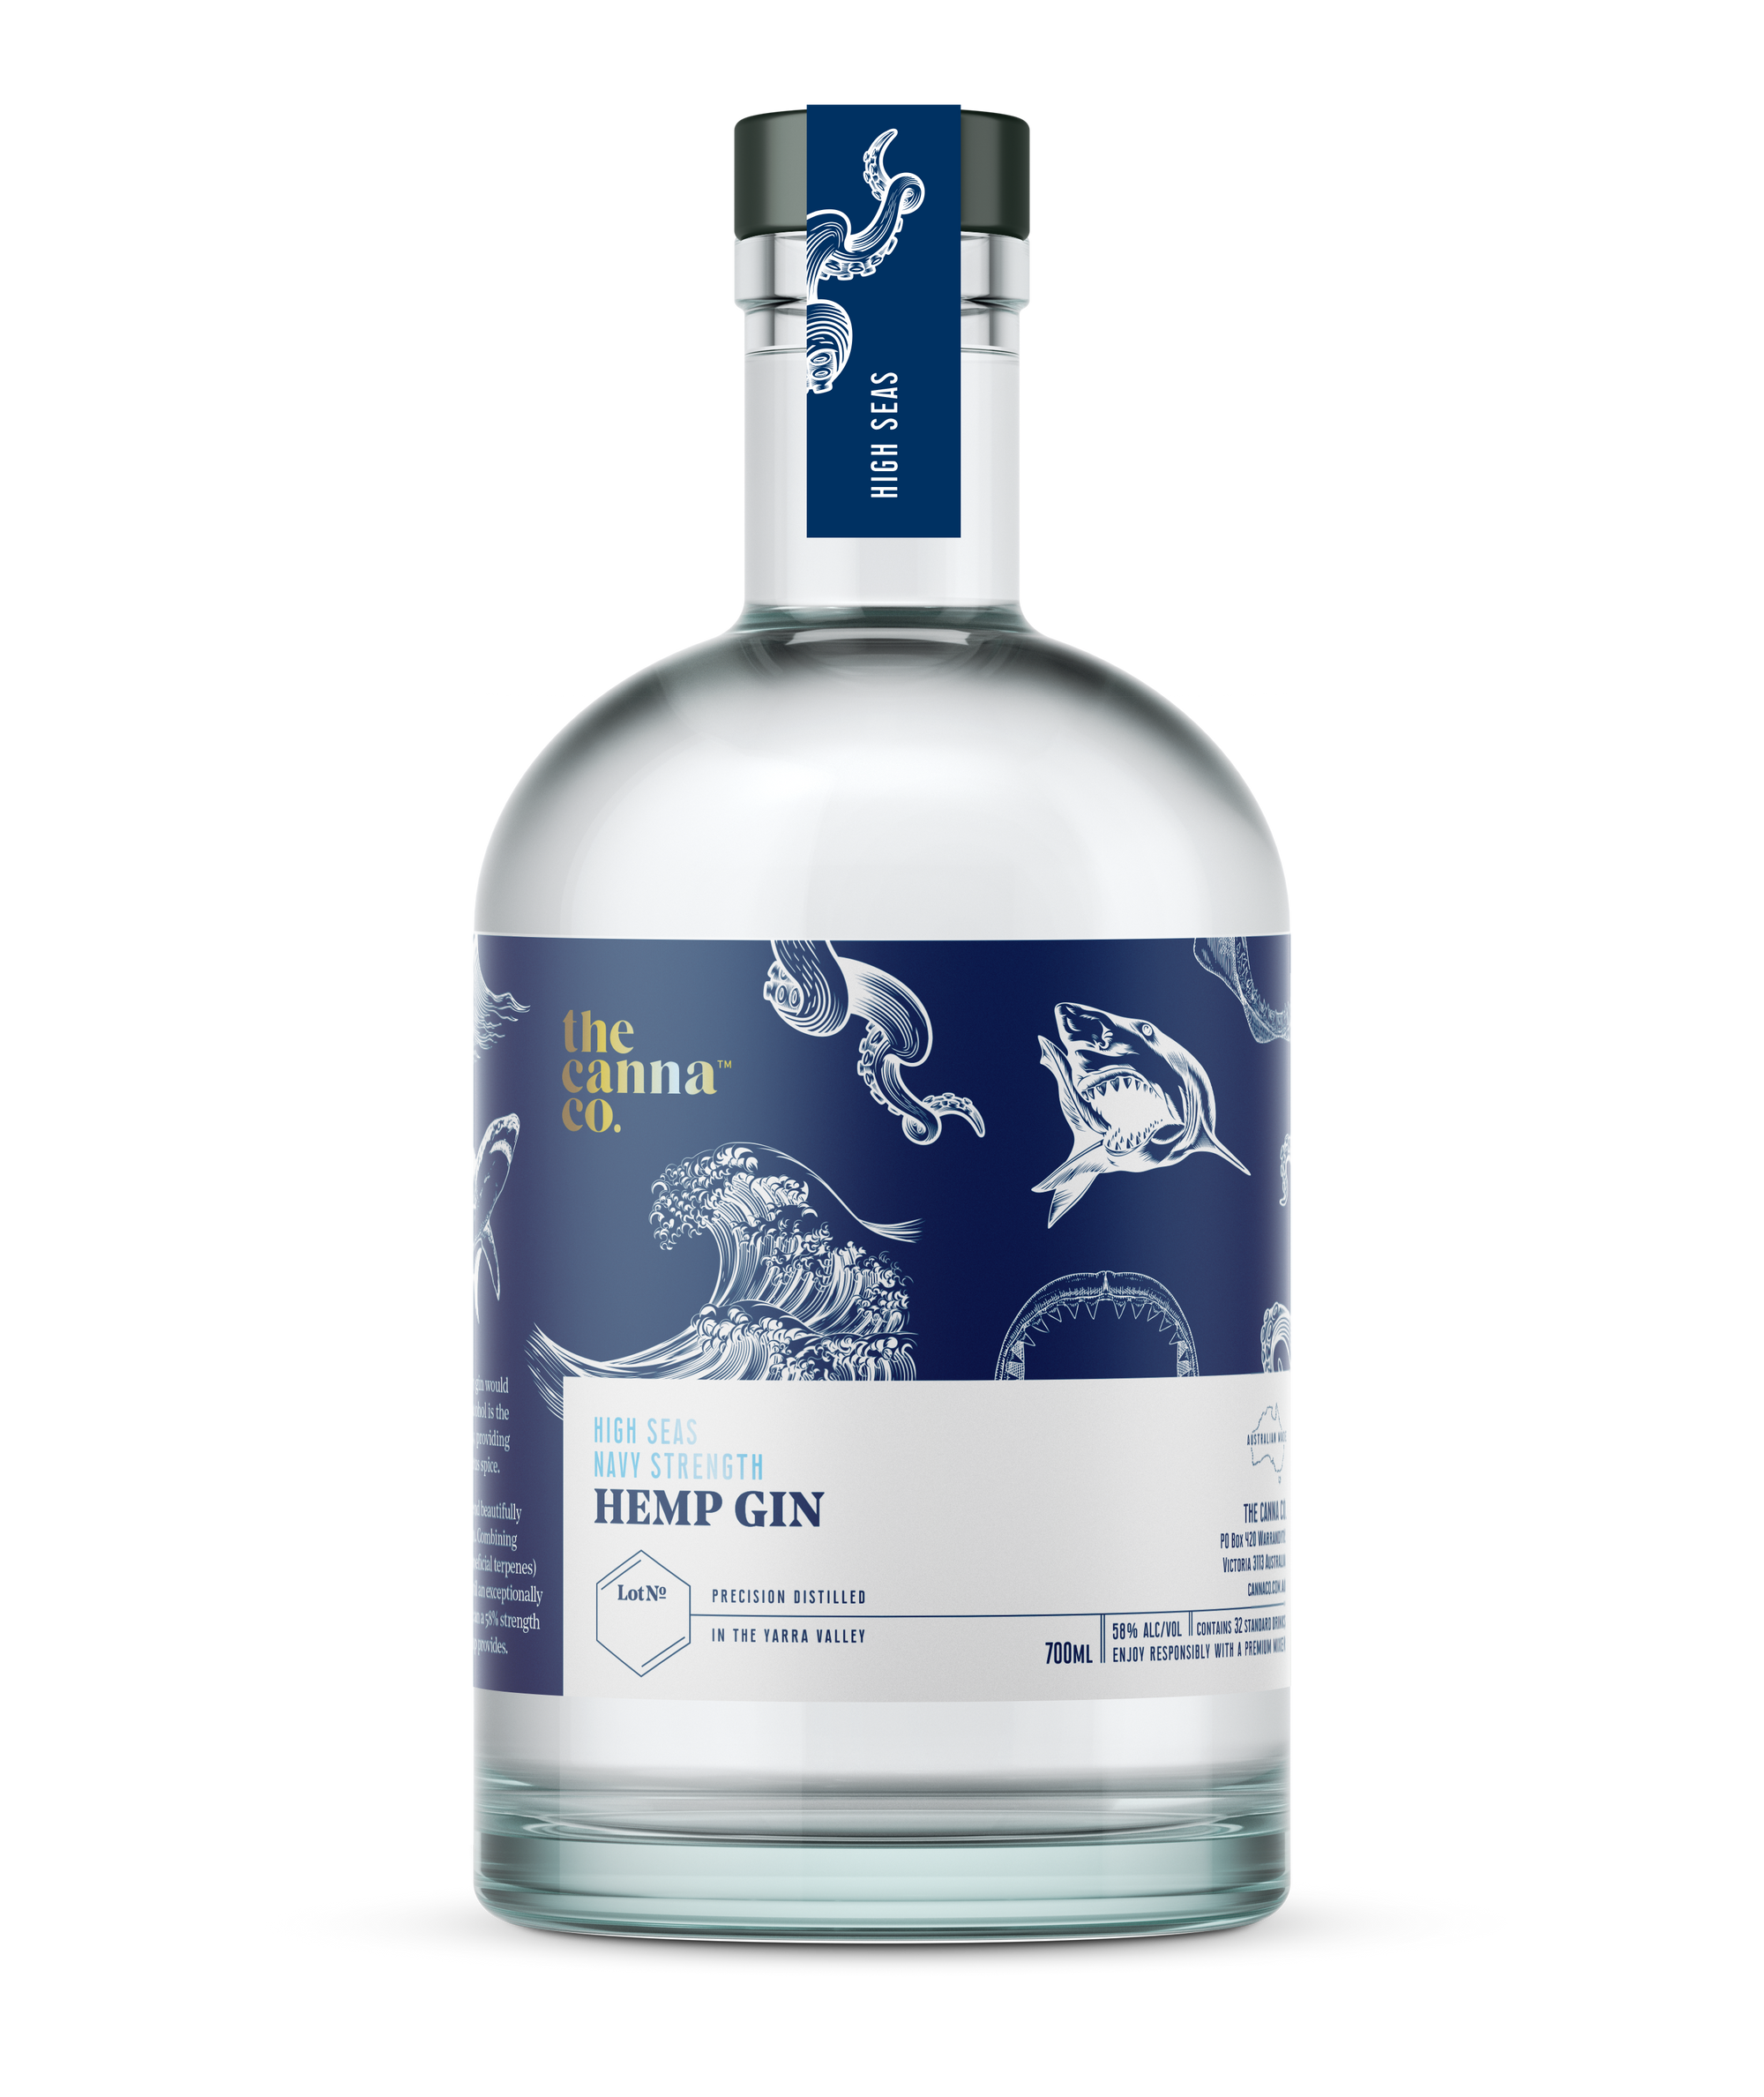 High Seas Navy Strength Hemp Gin